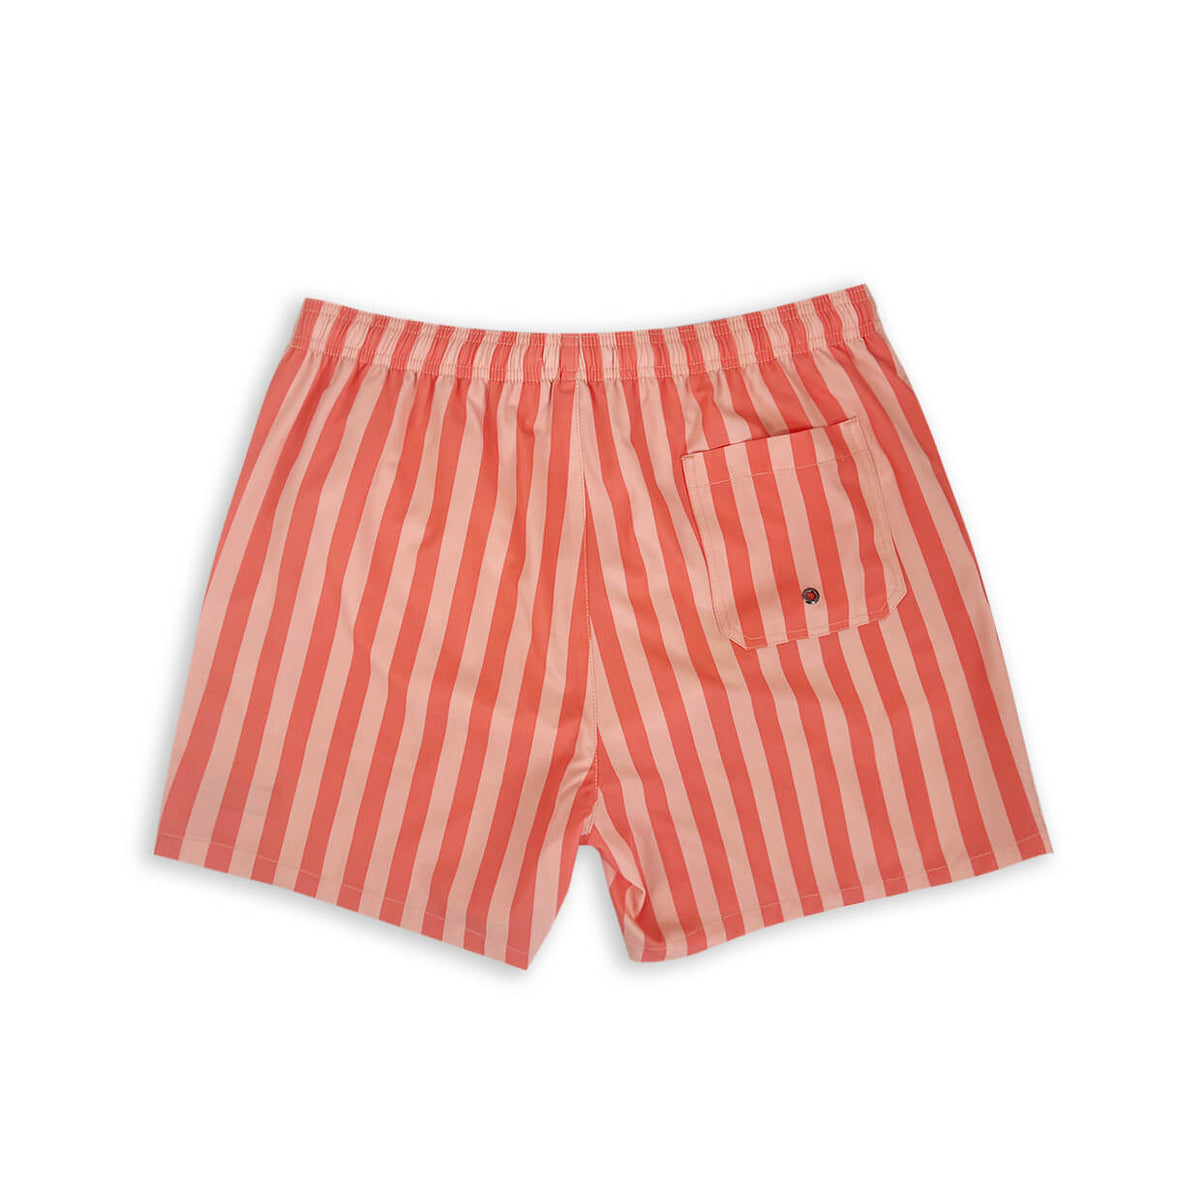 Men's Striped Shorts 5" Swim Trunks-Red